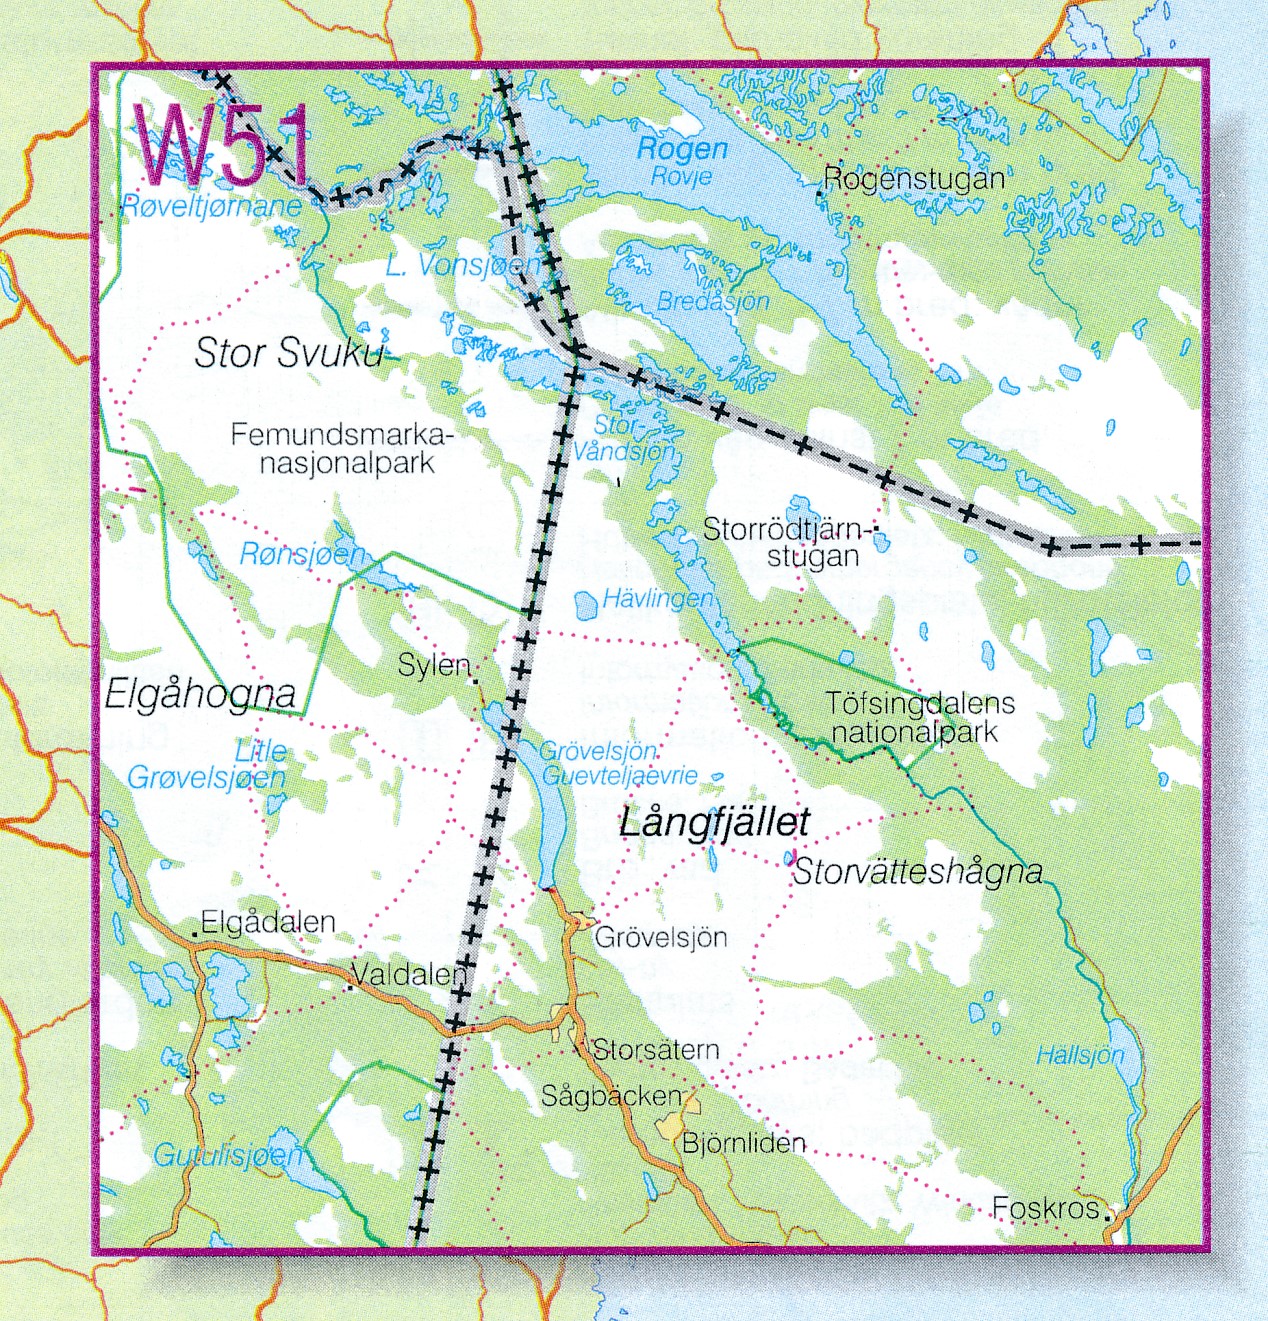 Wandelkaart - Topografische kaart W51 Fjällkartan Grövelsjön - Rogen